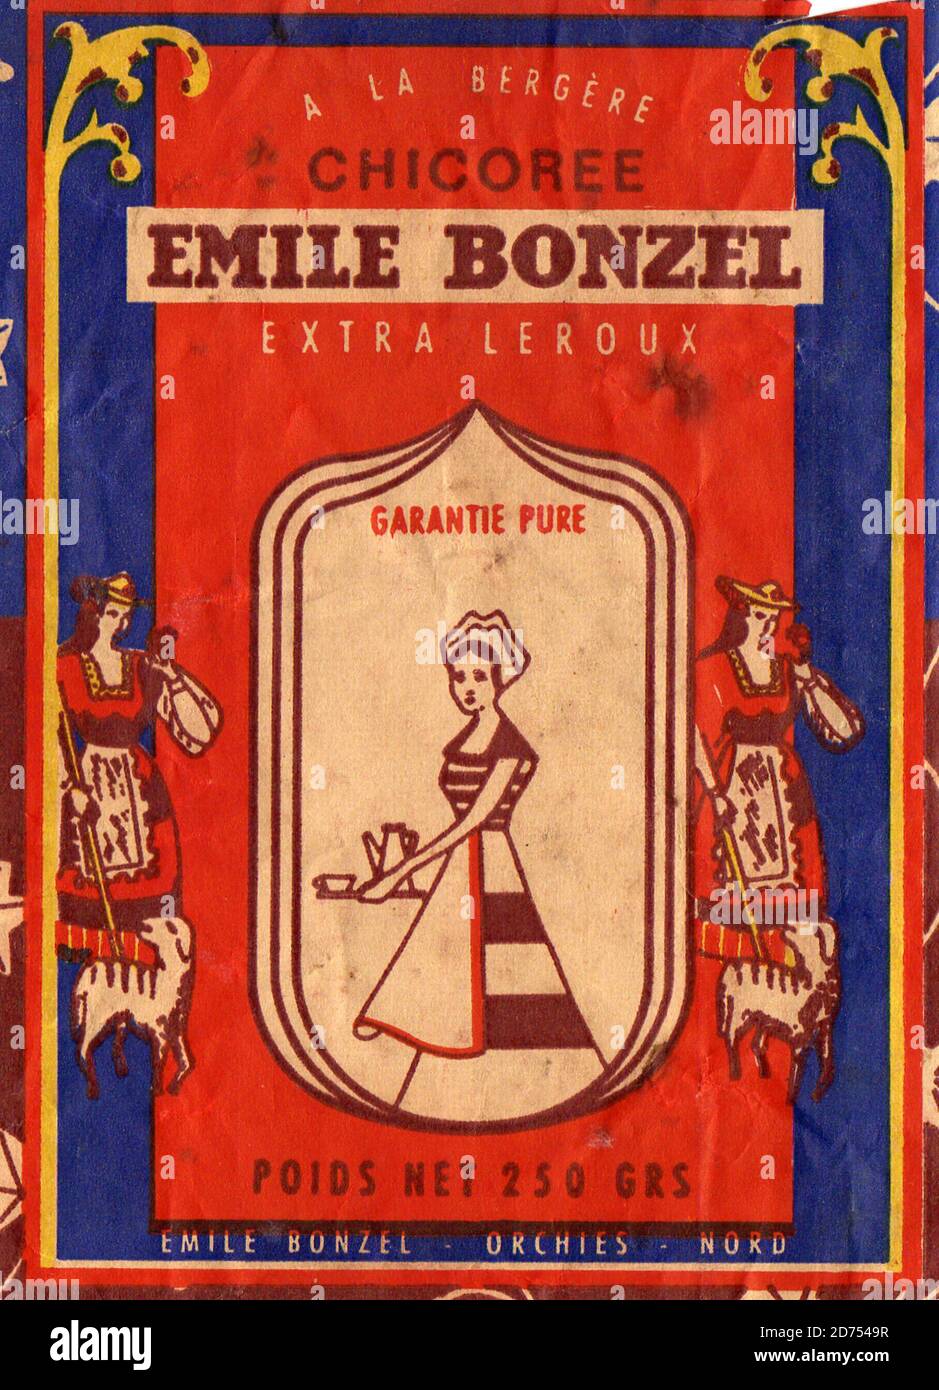 Etiquette de chicoree Emile Bonzel vers 1955 Stock Photo